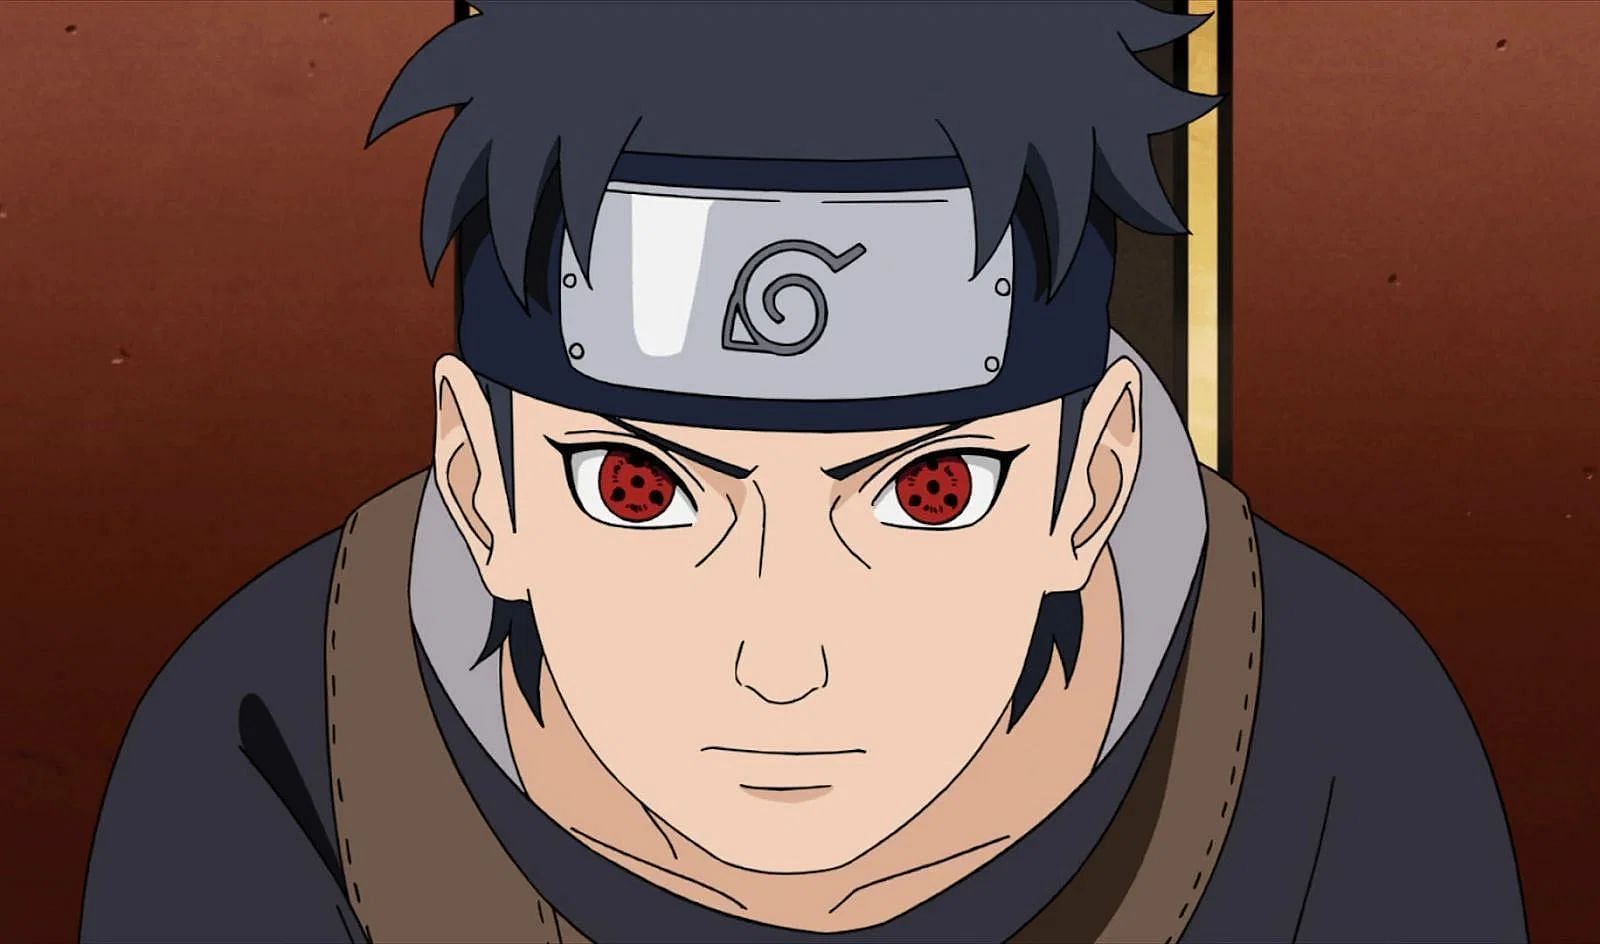 Shisui Uchiha as seen in Naruto (image via Studio Pierrot)